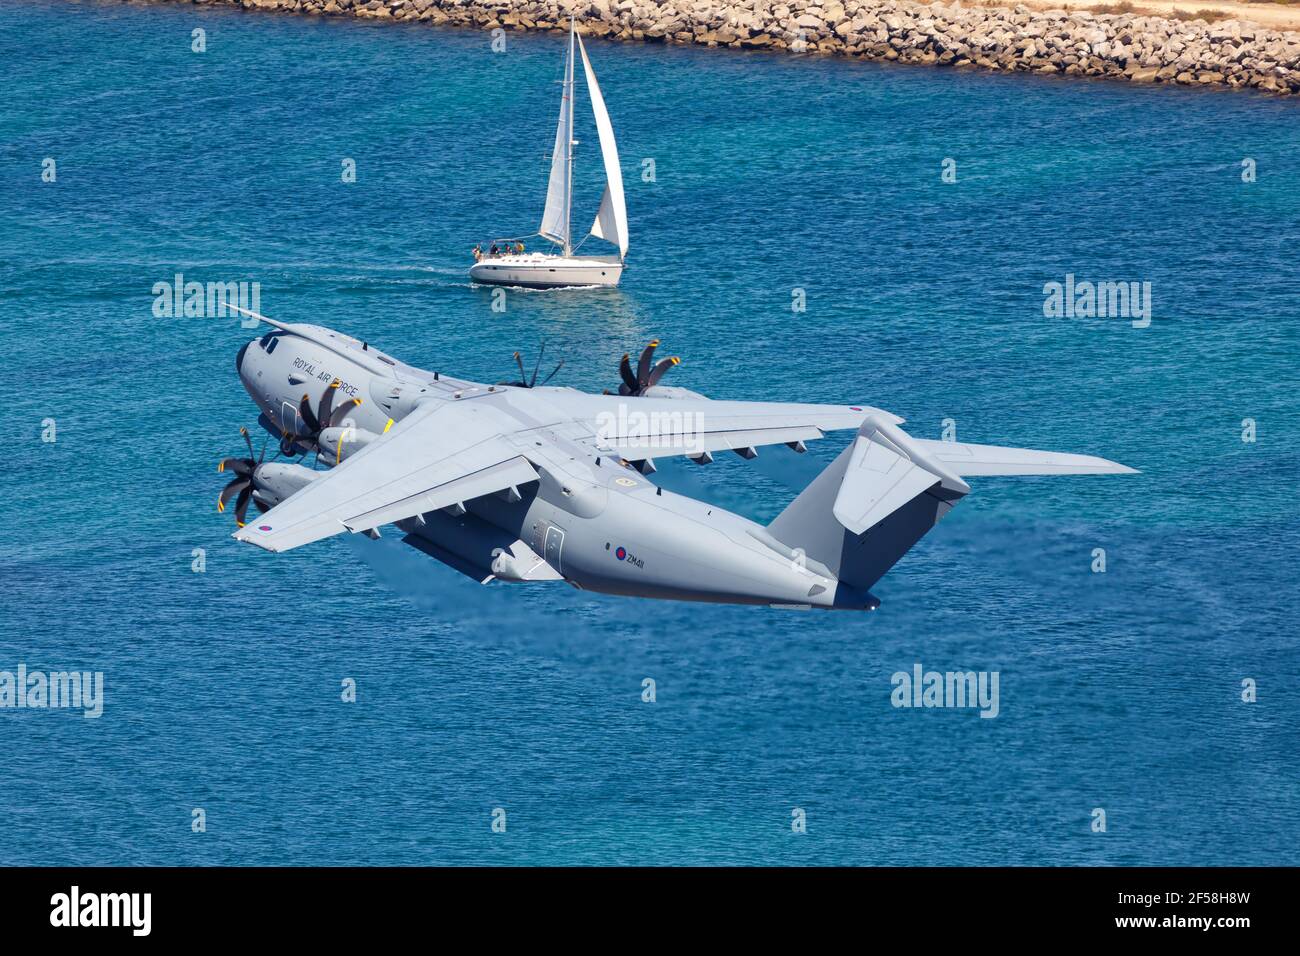 Gibilterra - 29 luglio 2018: Aereo Airbus A400M all'aeroporto di Gibilterra. Airbus è un costruttore europeo di aeromobili con sede a Tolosa, Francia. Foto Stock